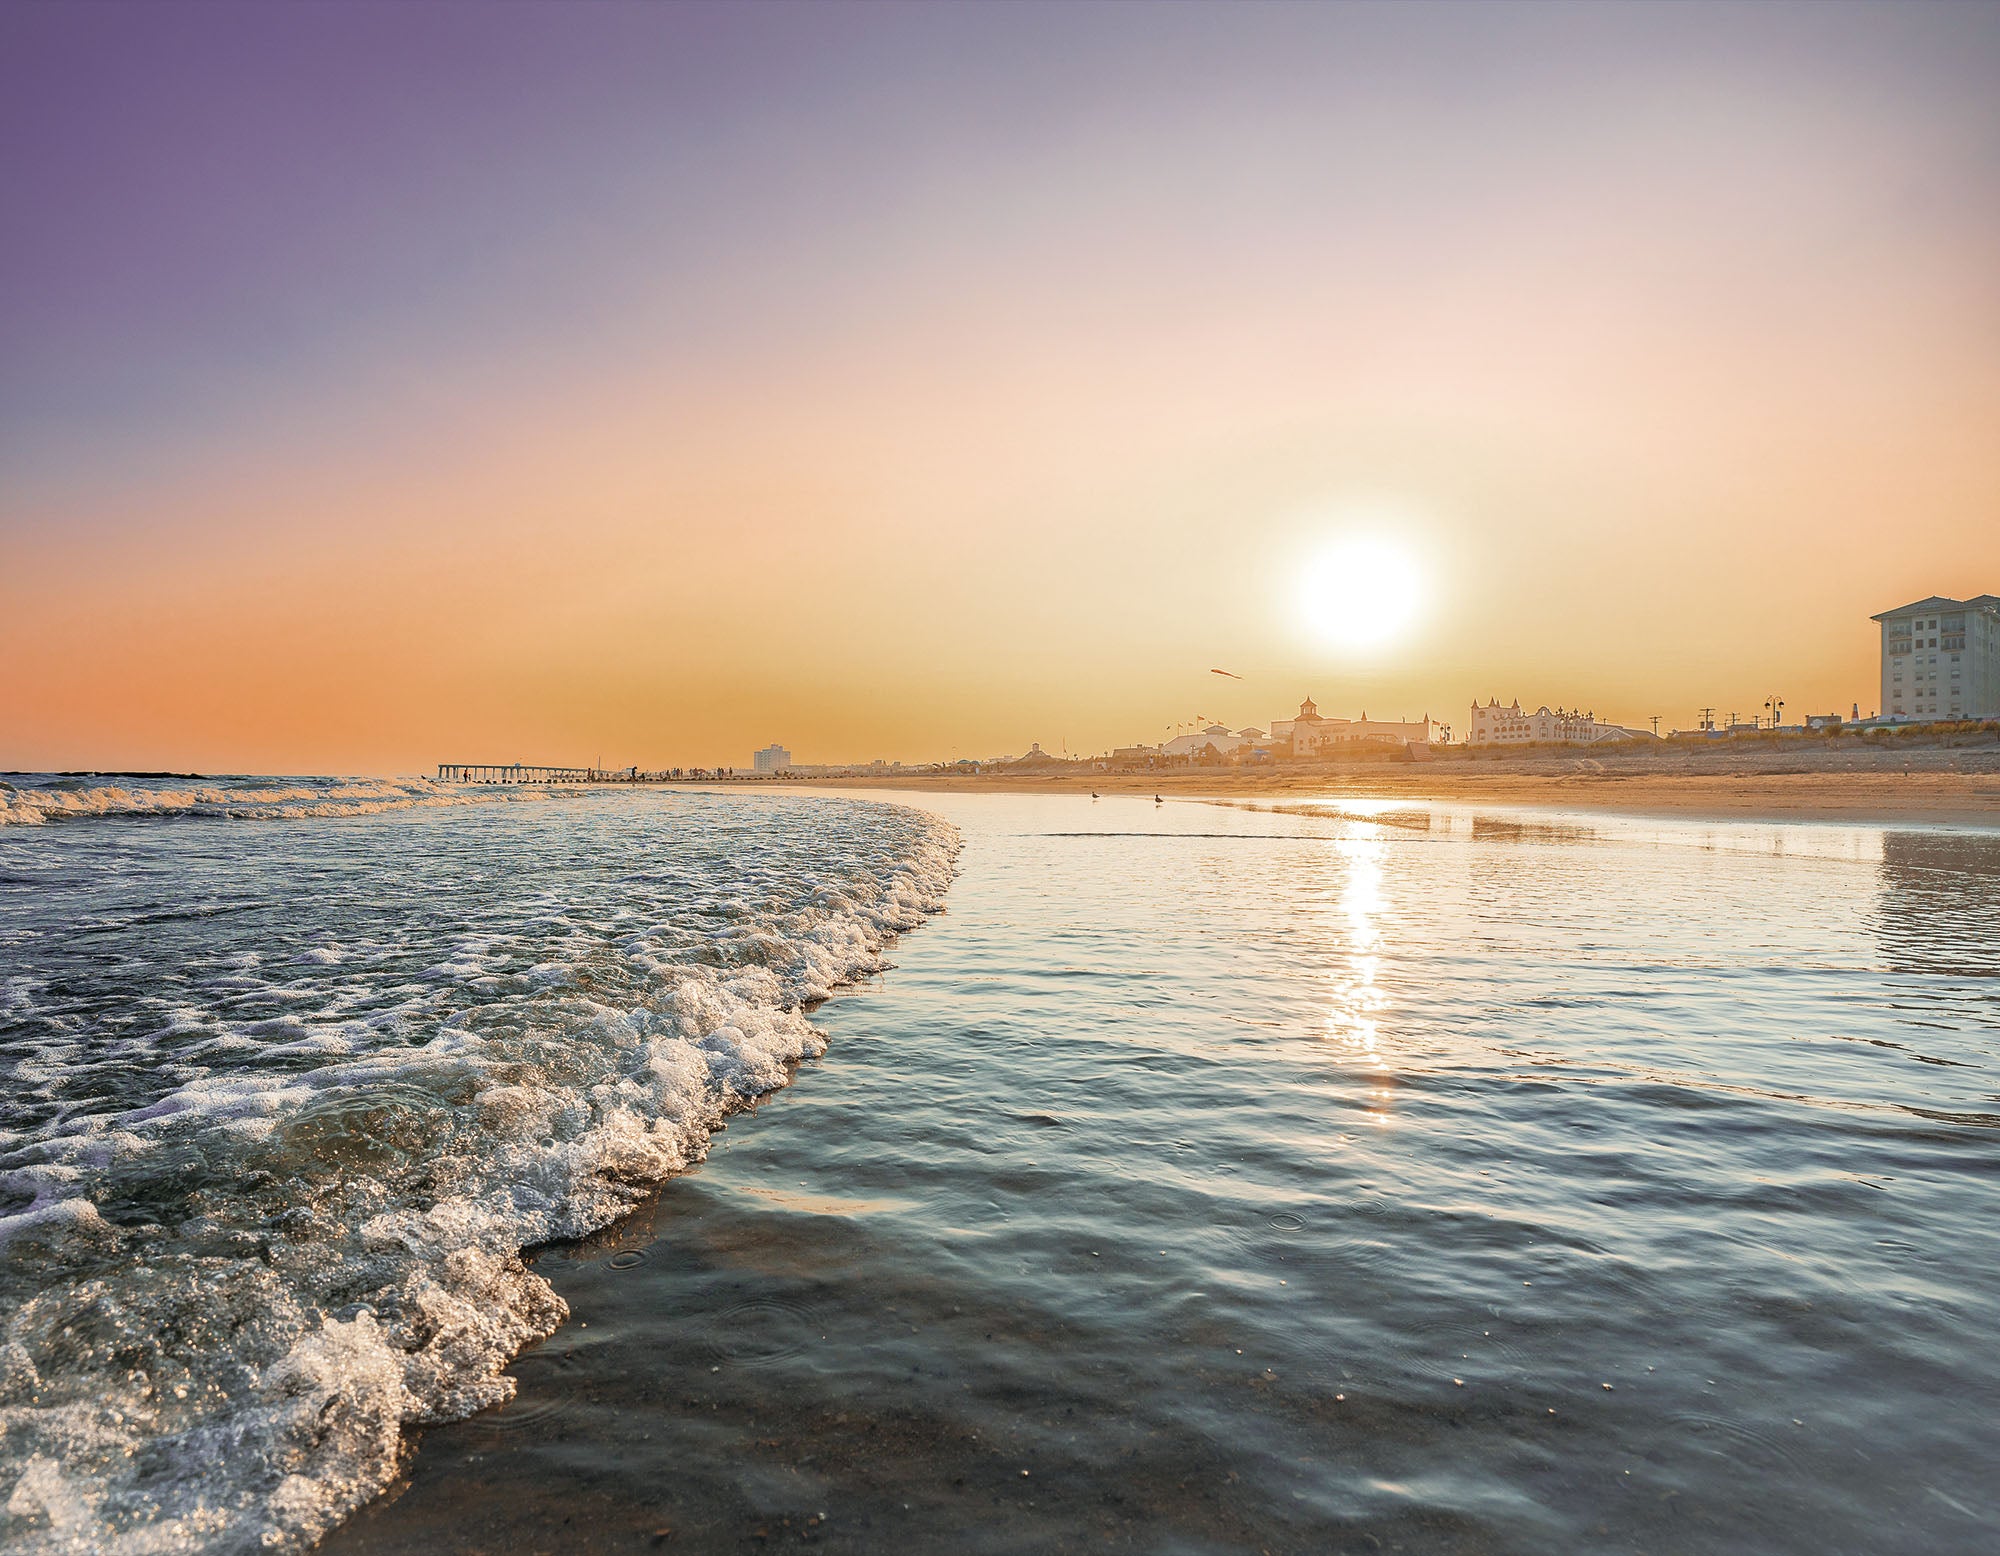 Ocean City Golden Sunset - Matted 11x14